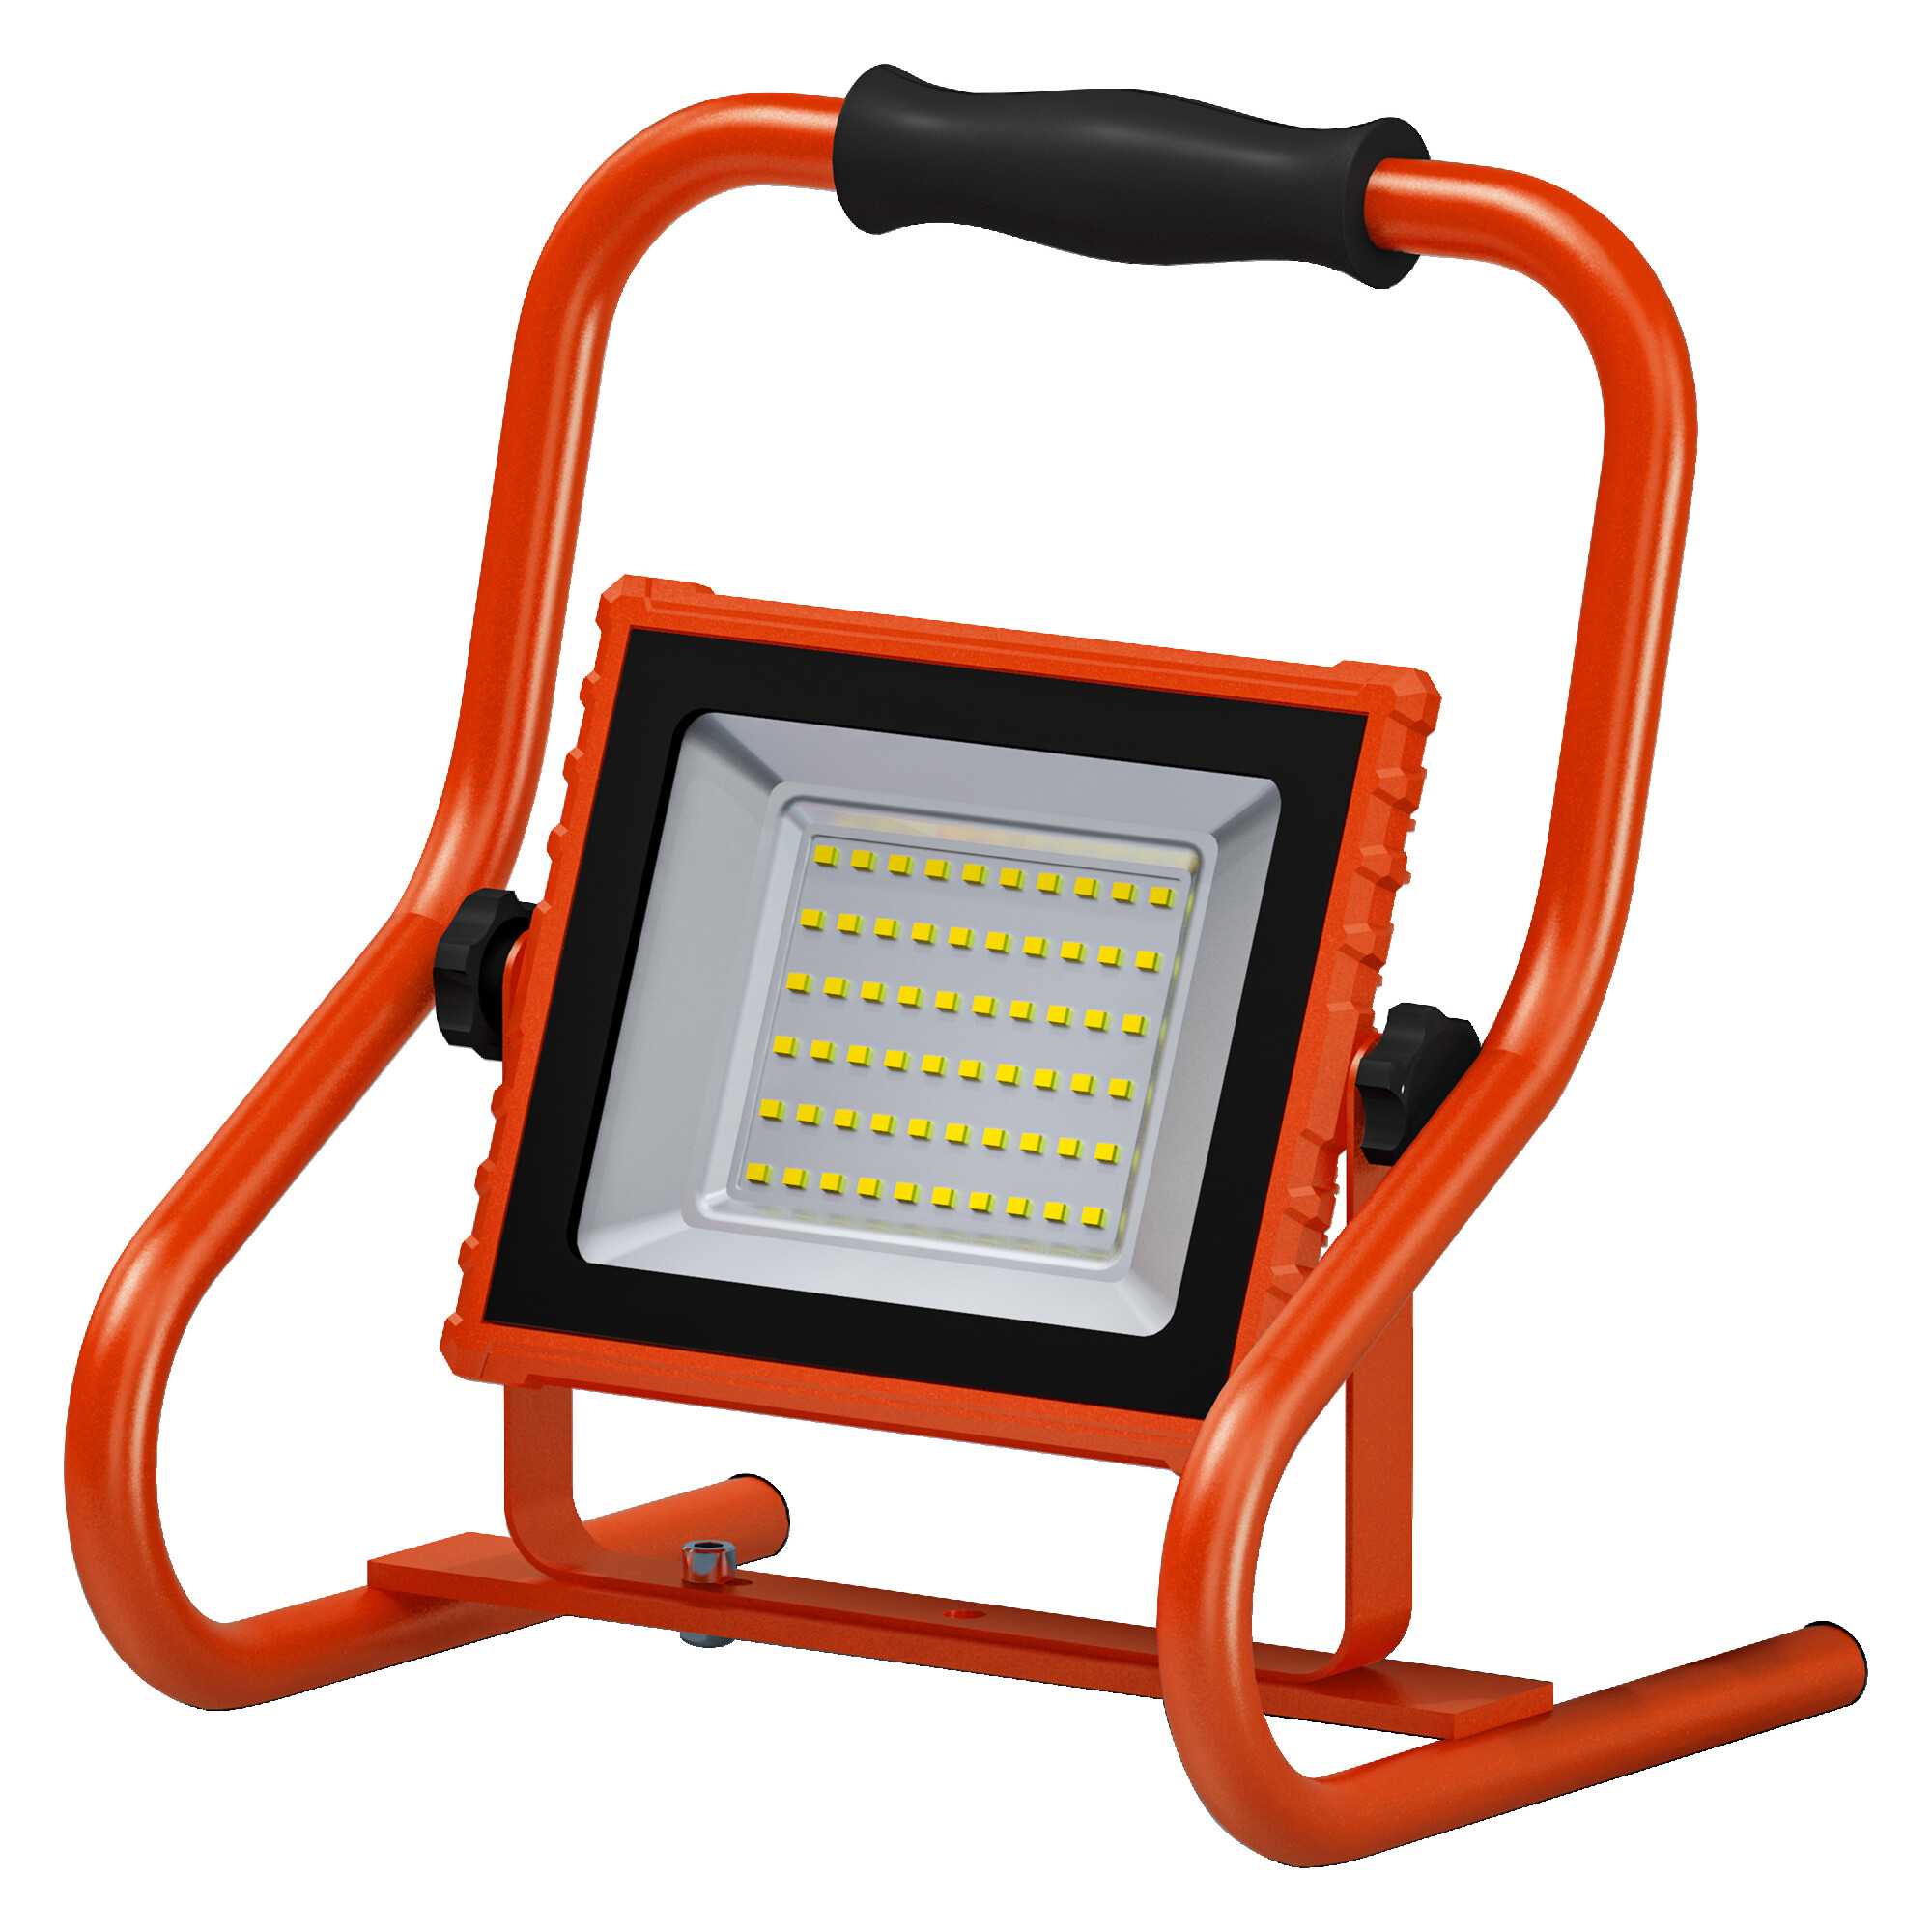 LED-Baustrahler 'Worklights' orange 1600 lm IP 44 + product picture